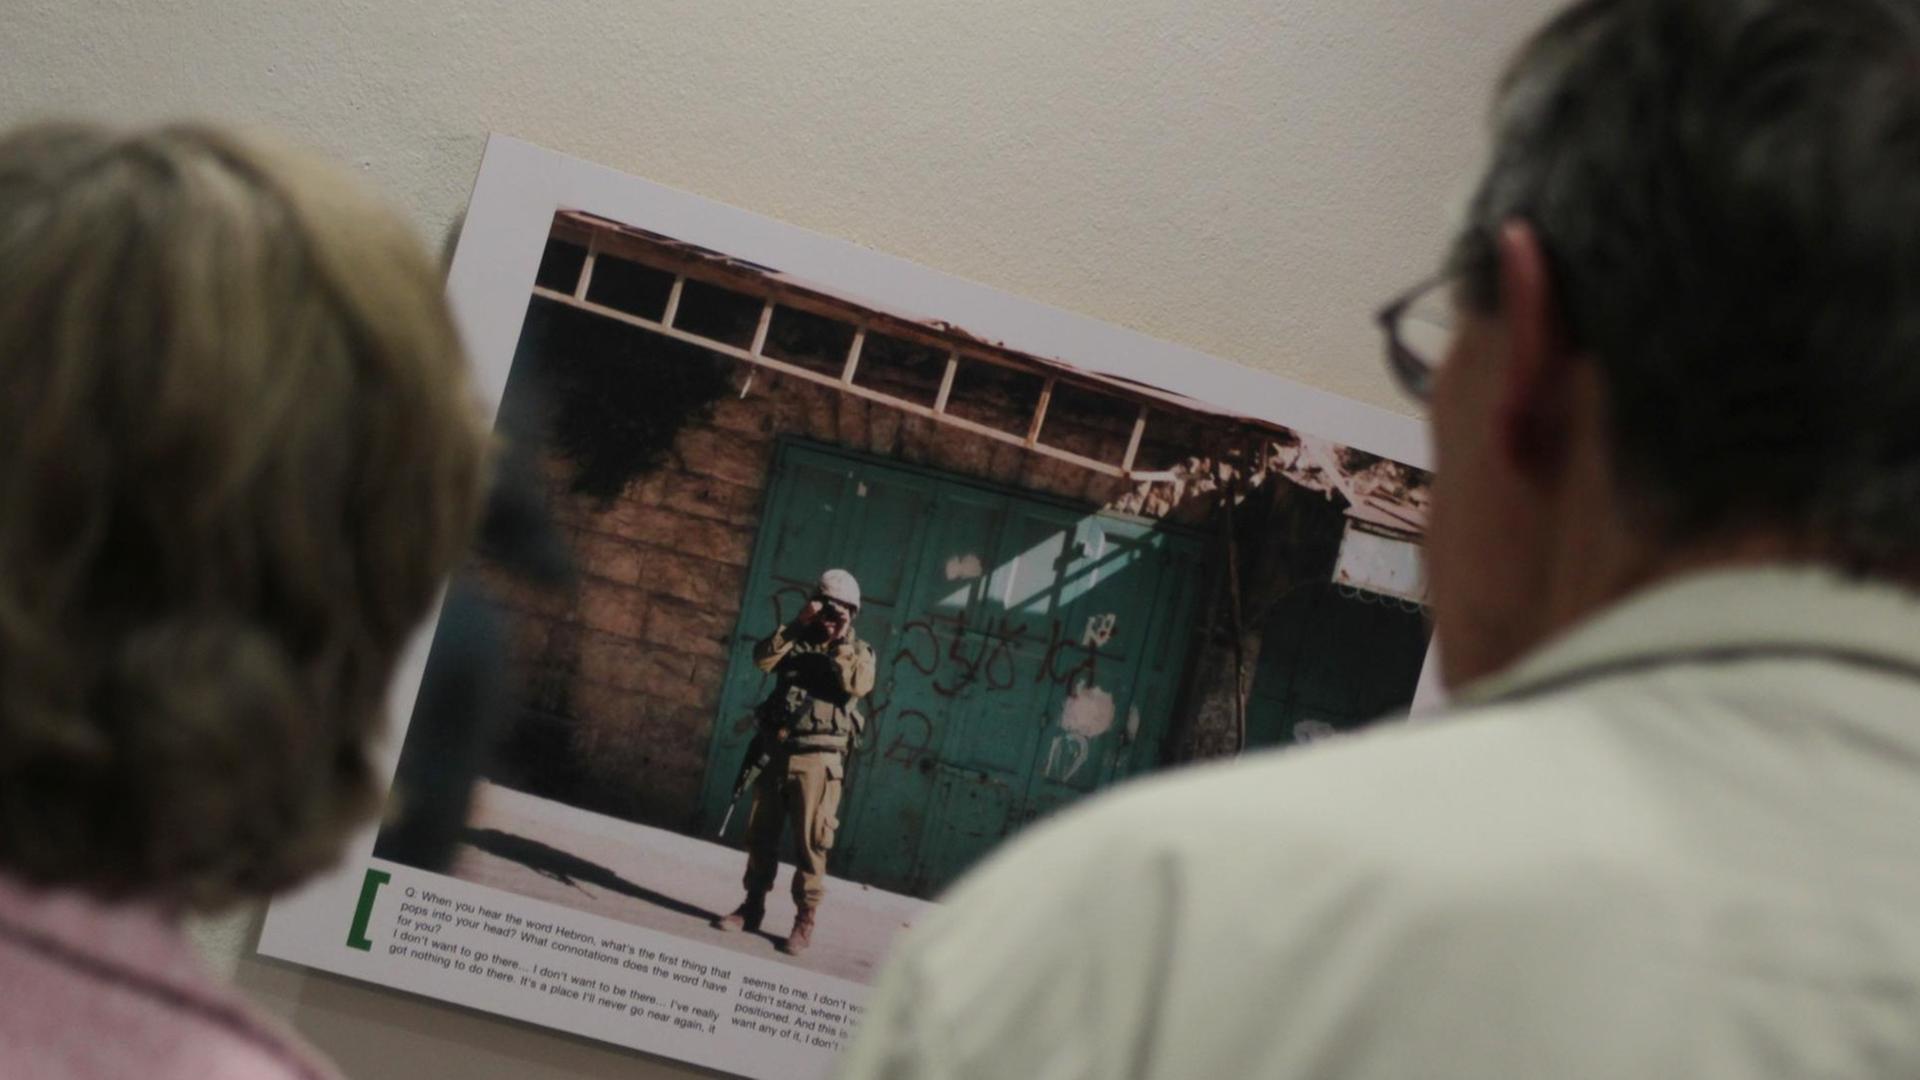 Zwei Besucher betrachten am Donnerstag (13.09.2012) ein Bild der Ausstellung "Breaking the Silence" im Willy-Brandt-Haus in Berlin. Die Ausstellung zeigt Fotos, die israelische Soldaten während ihres Militärdienstes für private Zwecke aufgenommen haben, welche den Besatzungsalltag widerspiegeln.